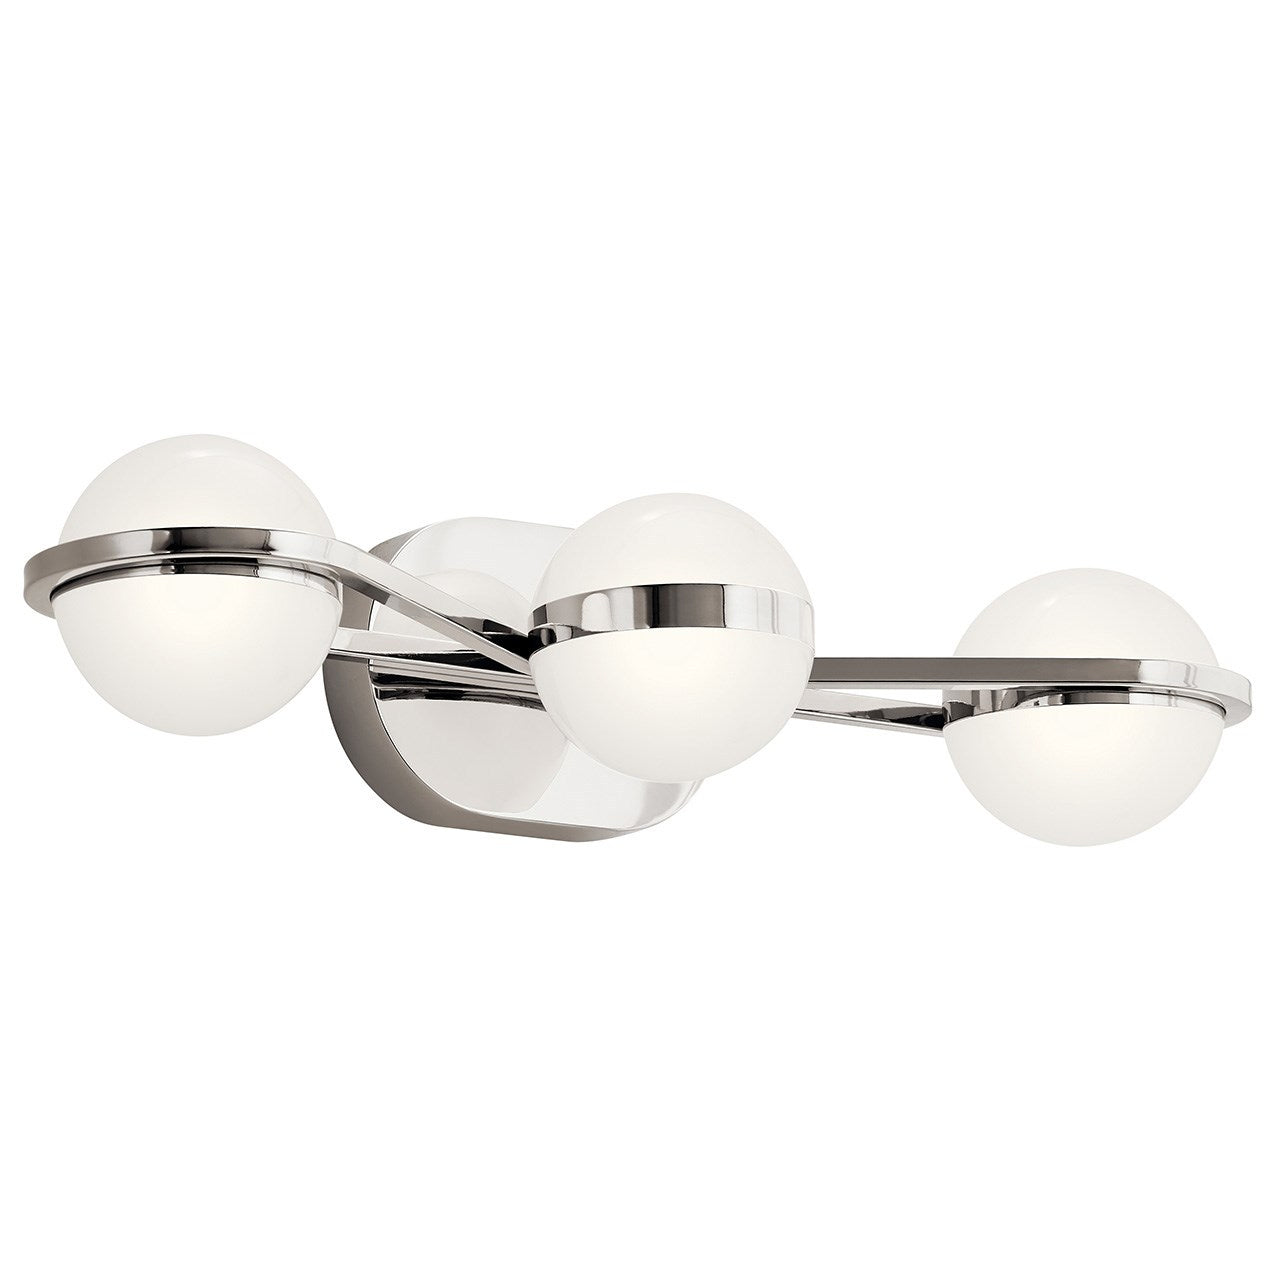 Kichler Canada - LED Bath - Brettin - Polished Nickel- Union Lighting Luminaires Decor